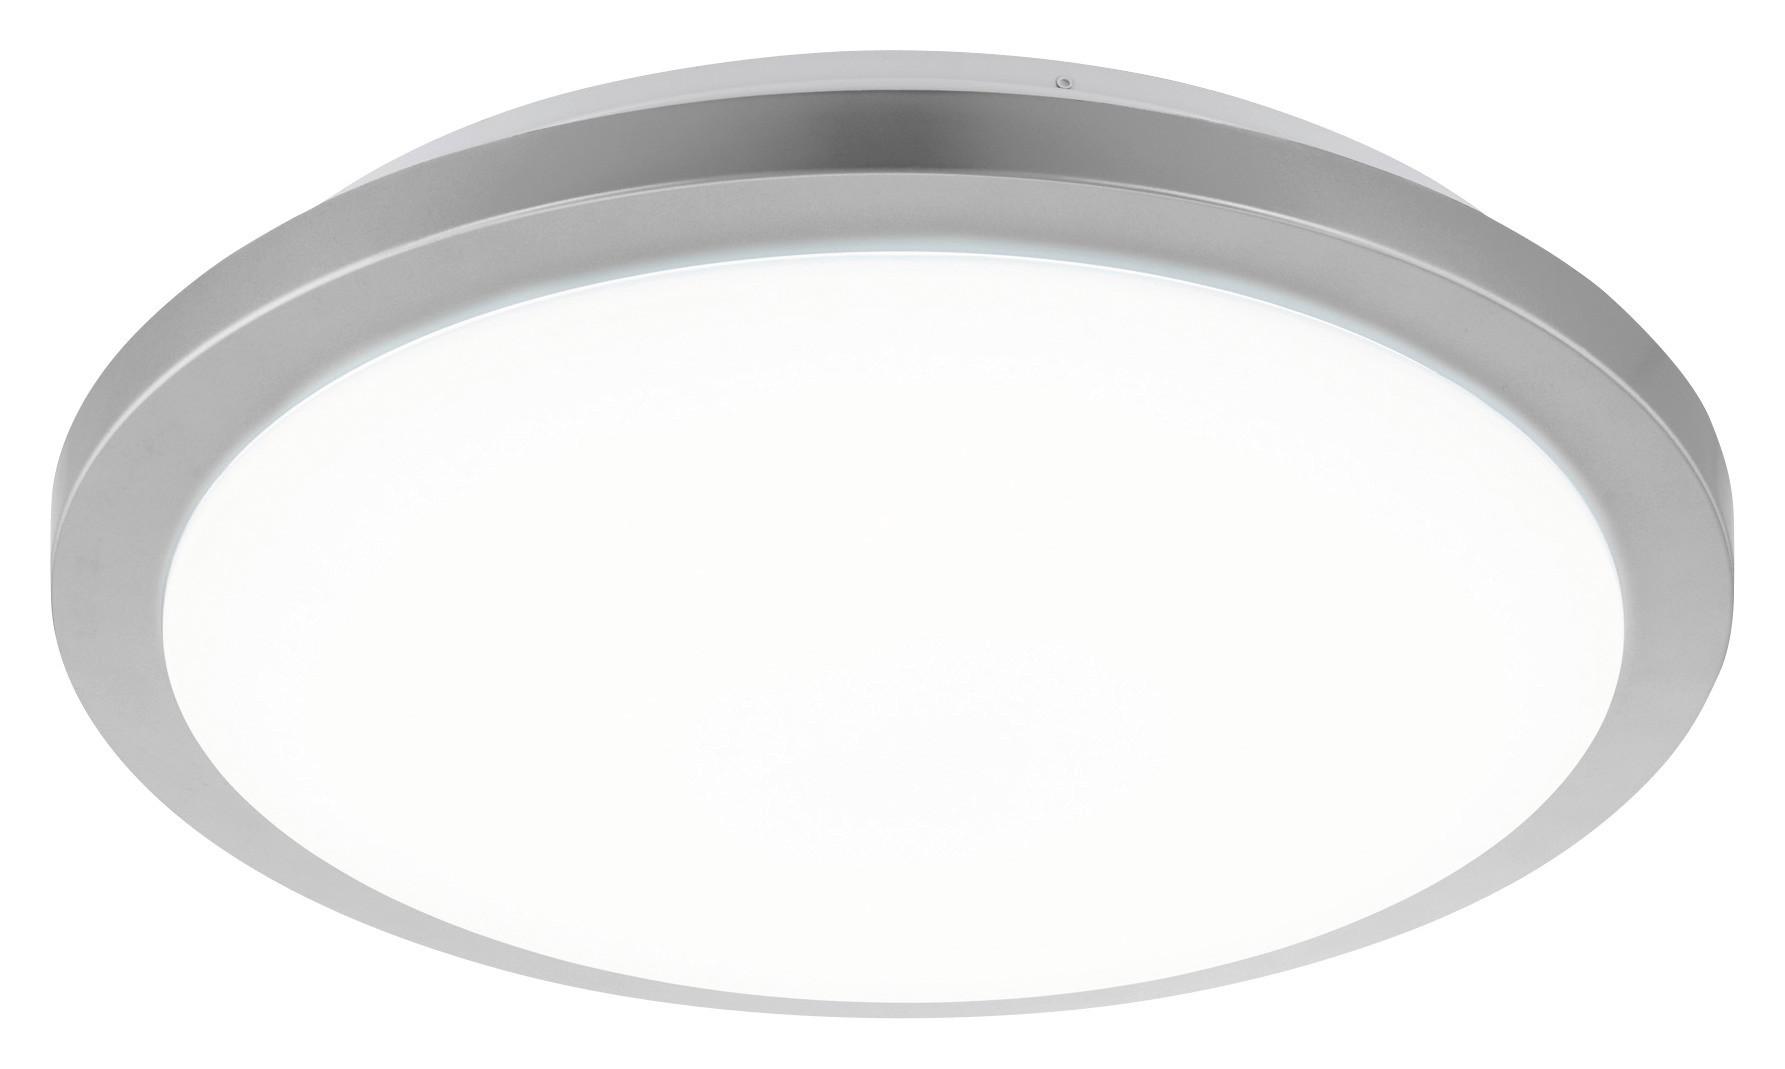 LED-Deckenleuchte Competa-St Ø 77,5 cm 4-Fach Schaltbar - Silberfarben/Weiß, Basics, Kunststoff/Metall (77,5/17,5cm)